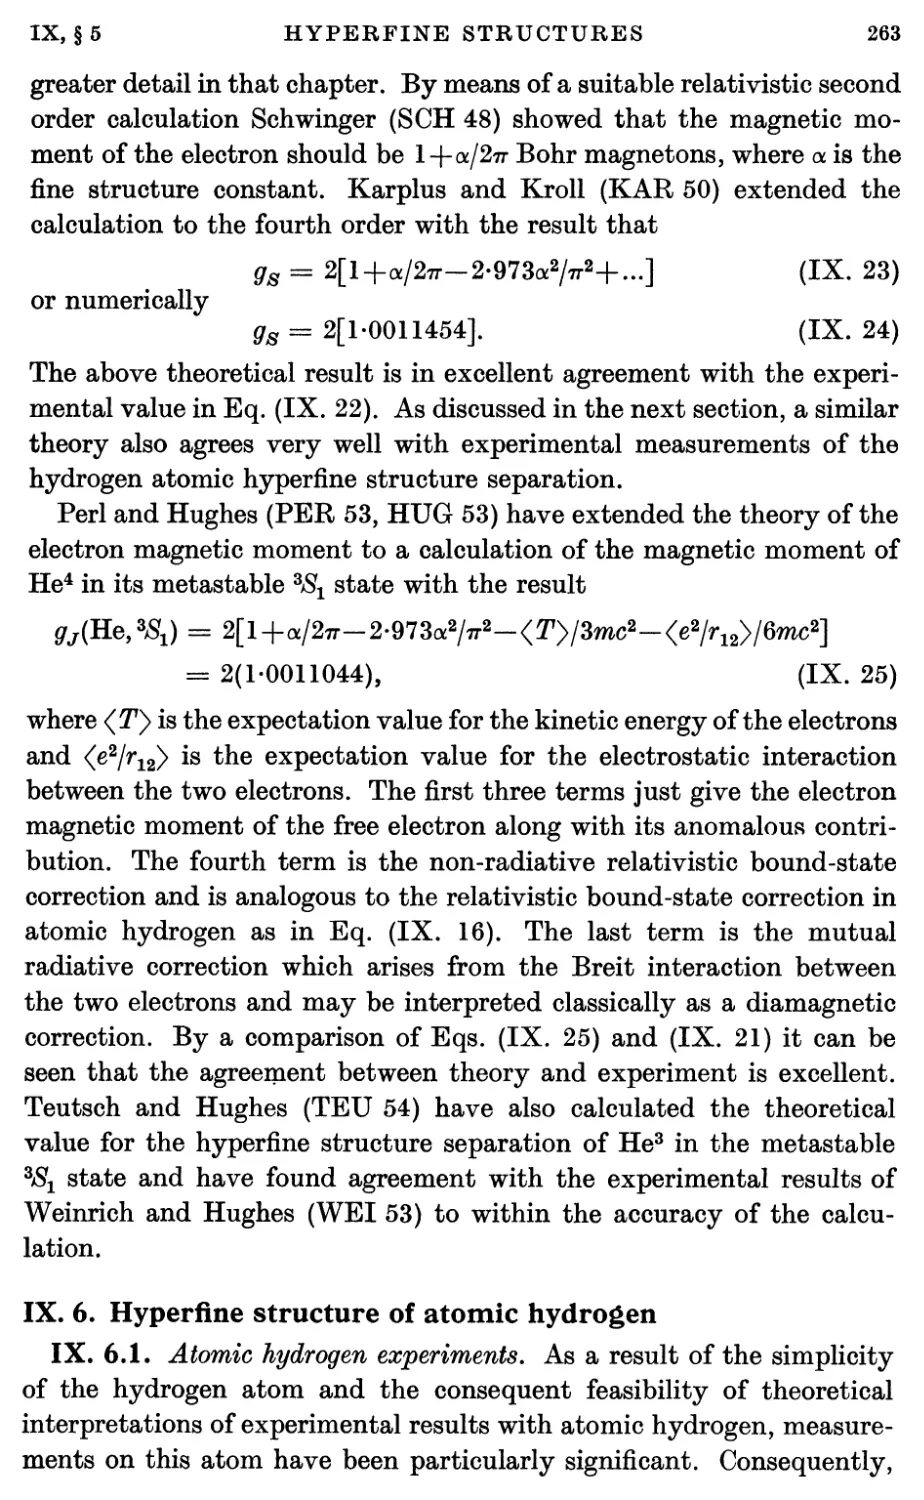 IX.6. Hyperfine Structure of Atomic Hydrogen